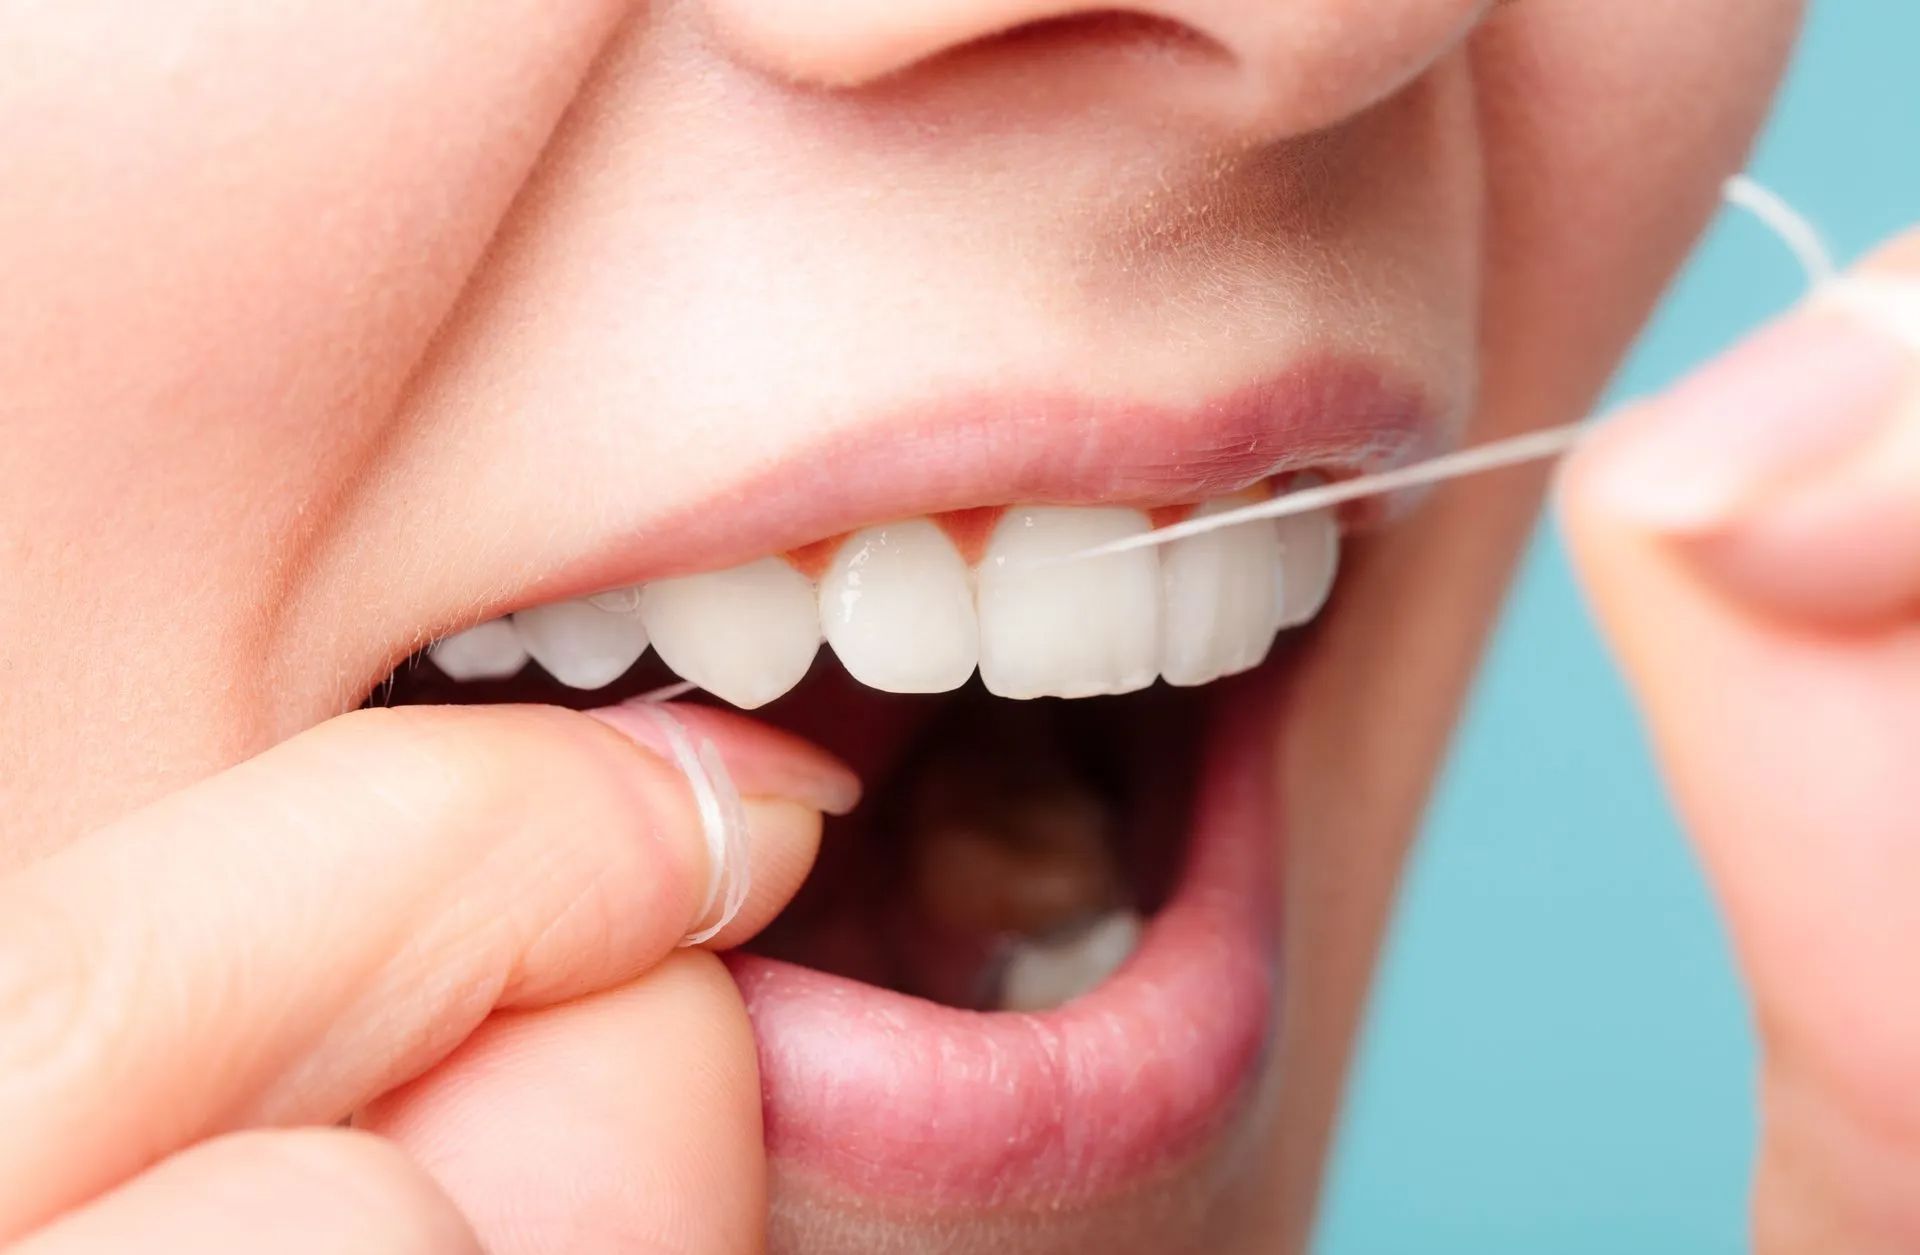 Utilizar fio dentário quando se lava os dentes, é essencial numa rotina de higiene oral.